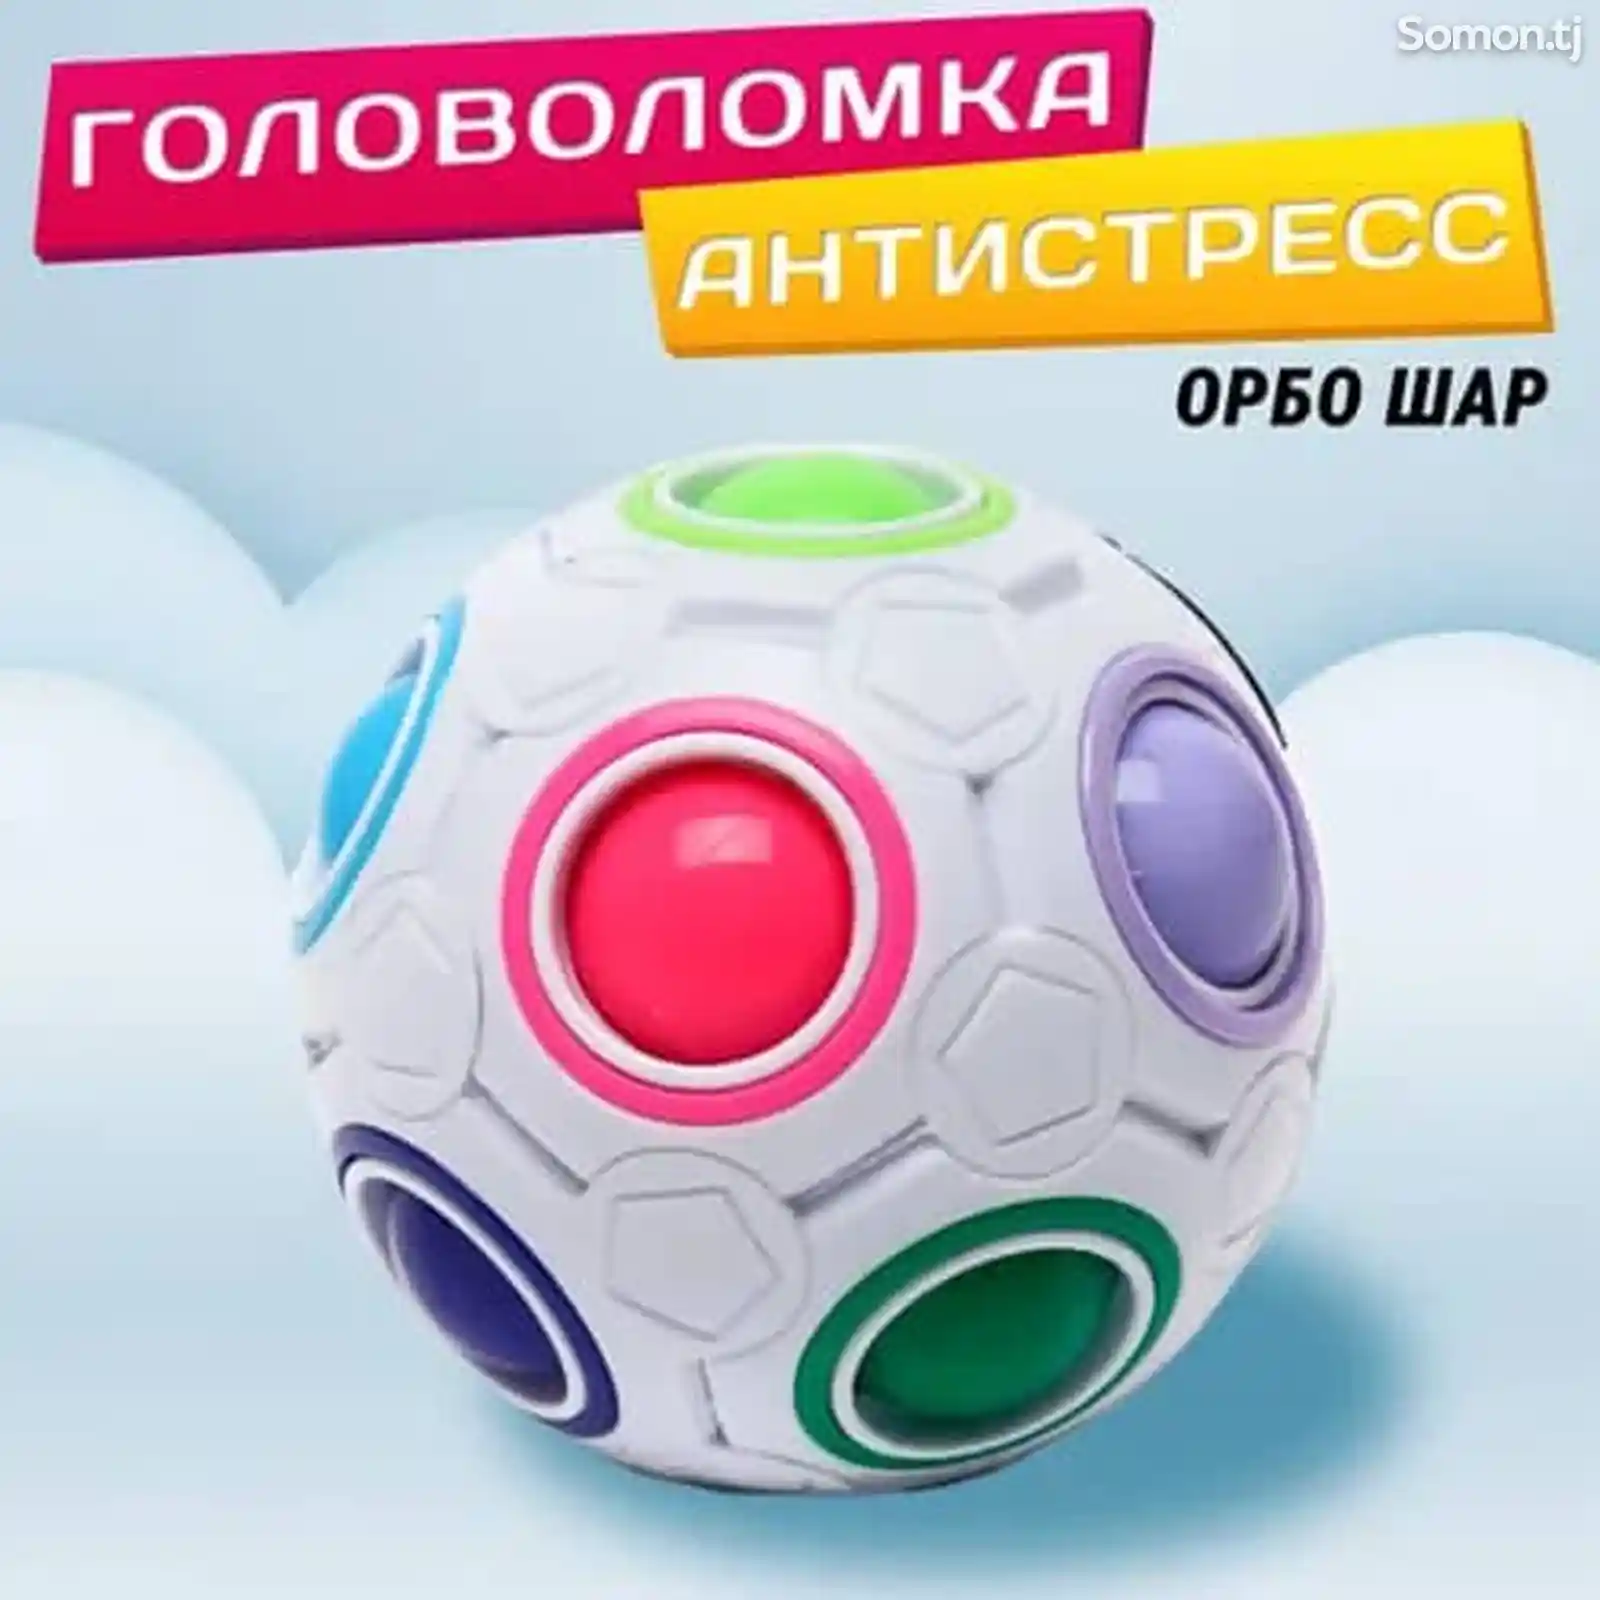 Радужный шар кубика Рубика, Шар Обро, Magic Rainbow Ball-1